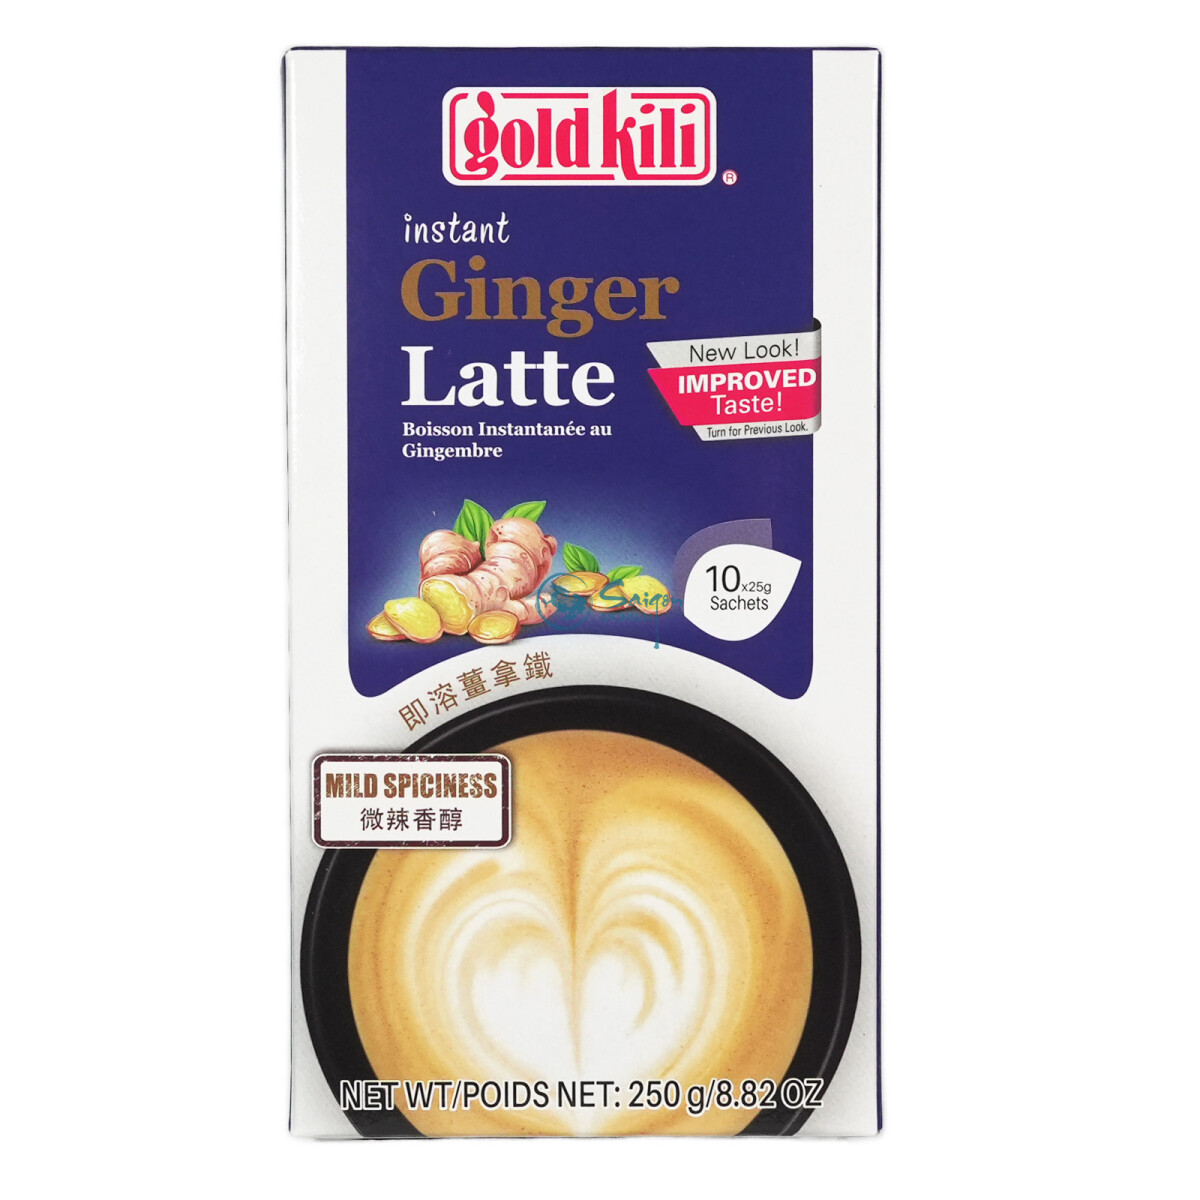 Gold Kili Ginger Latte Instant 250g